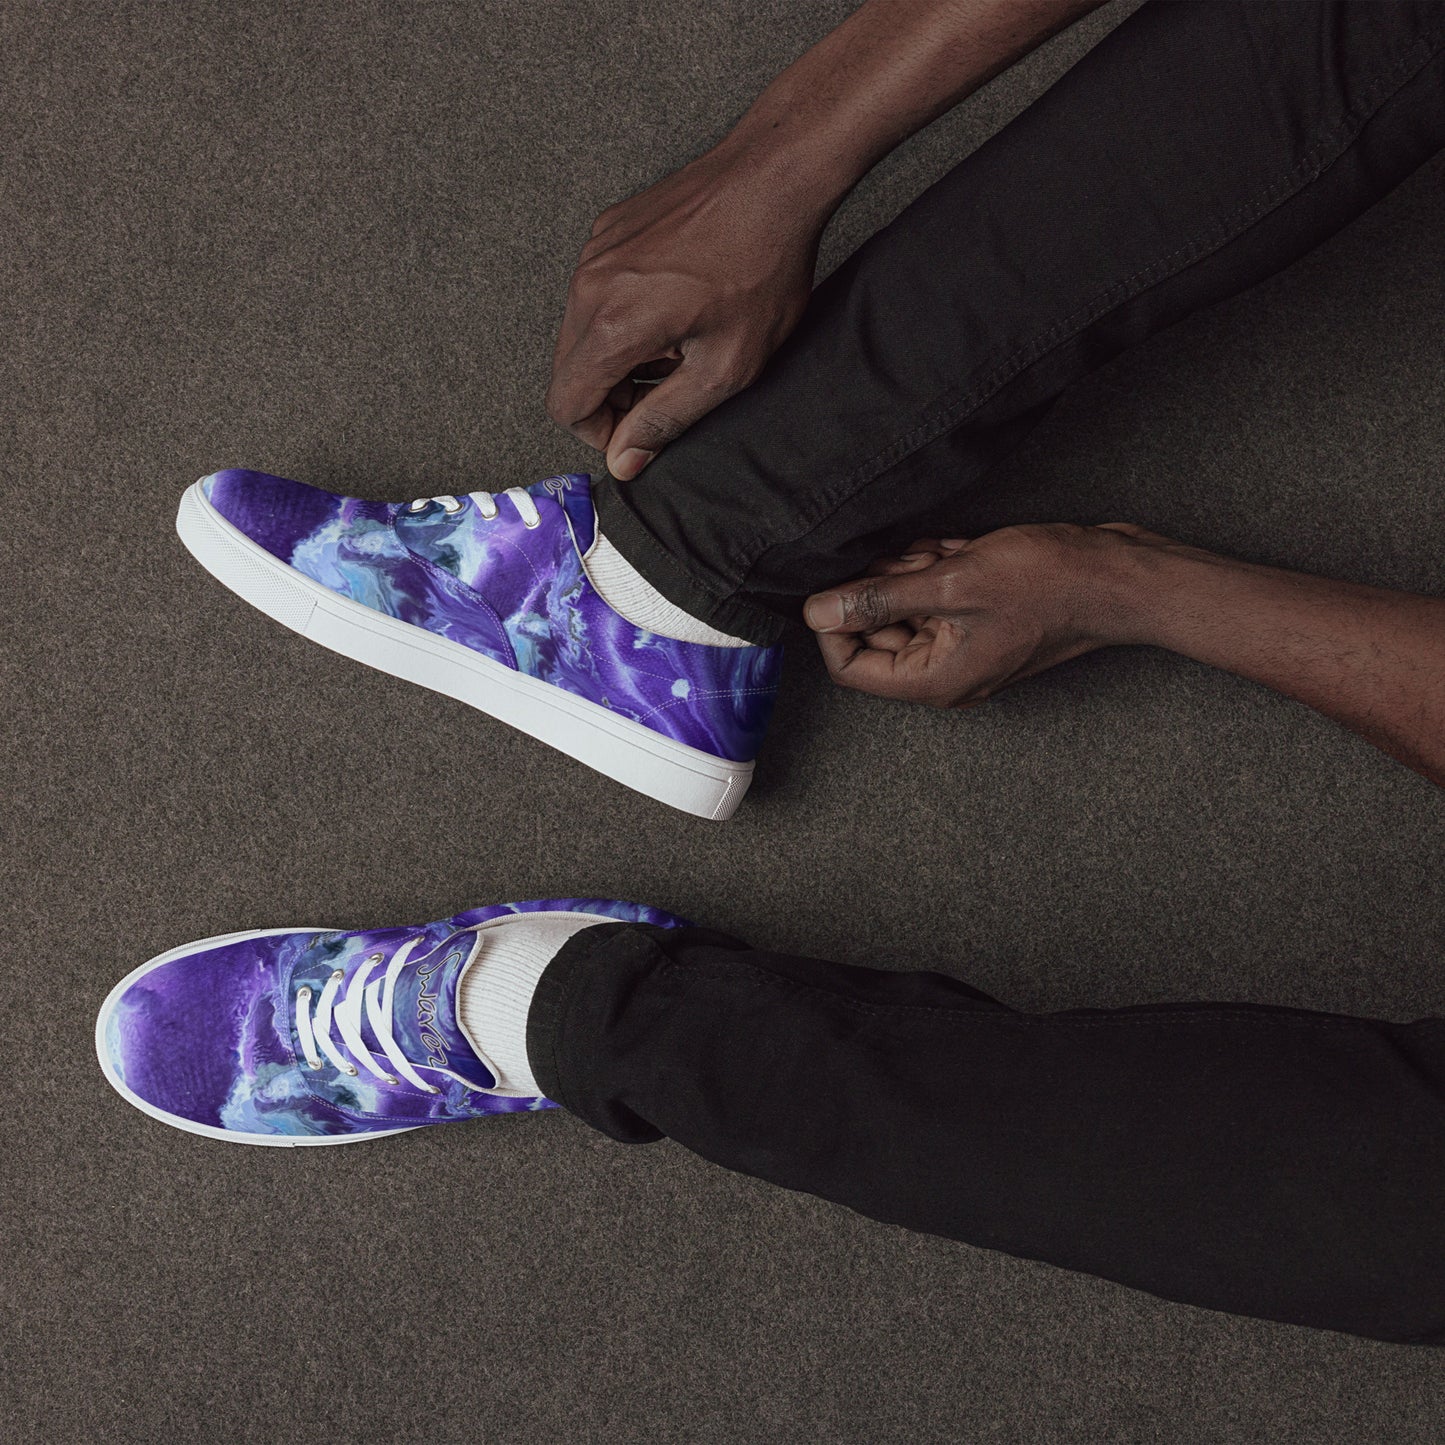 Men’s lace-up canvas shoes - Ady's Purplez!